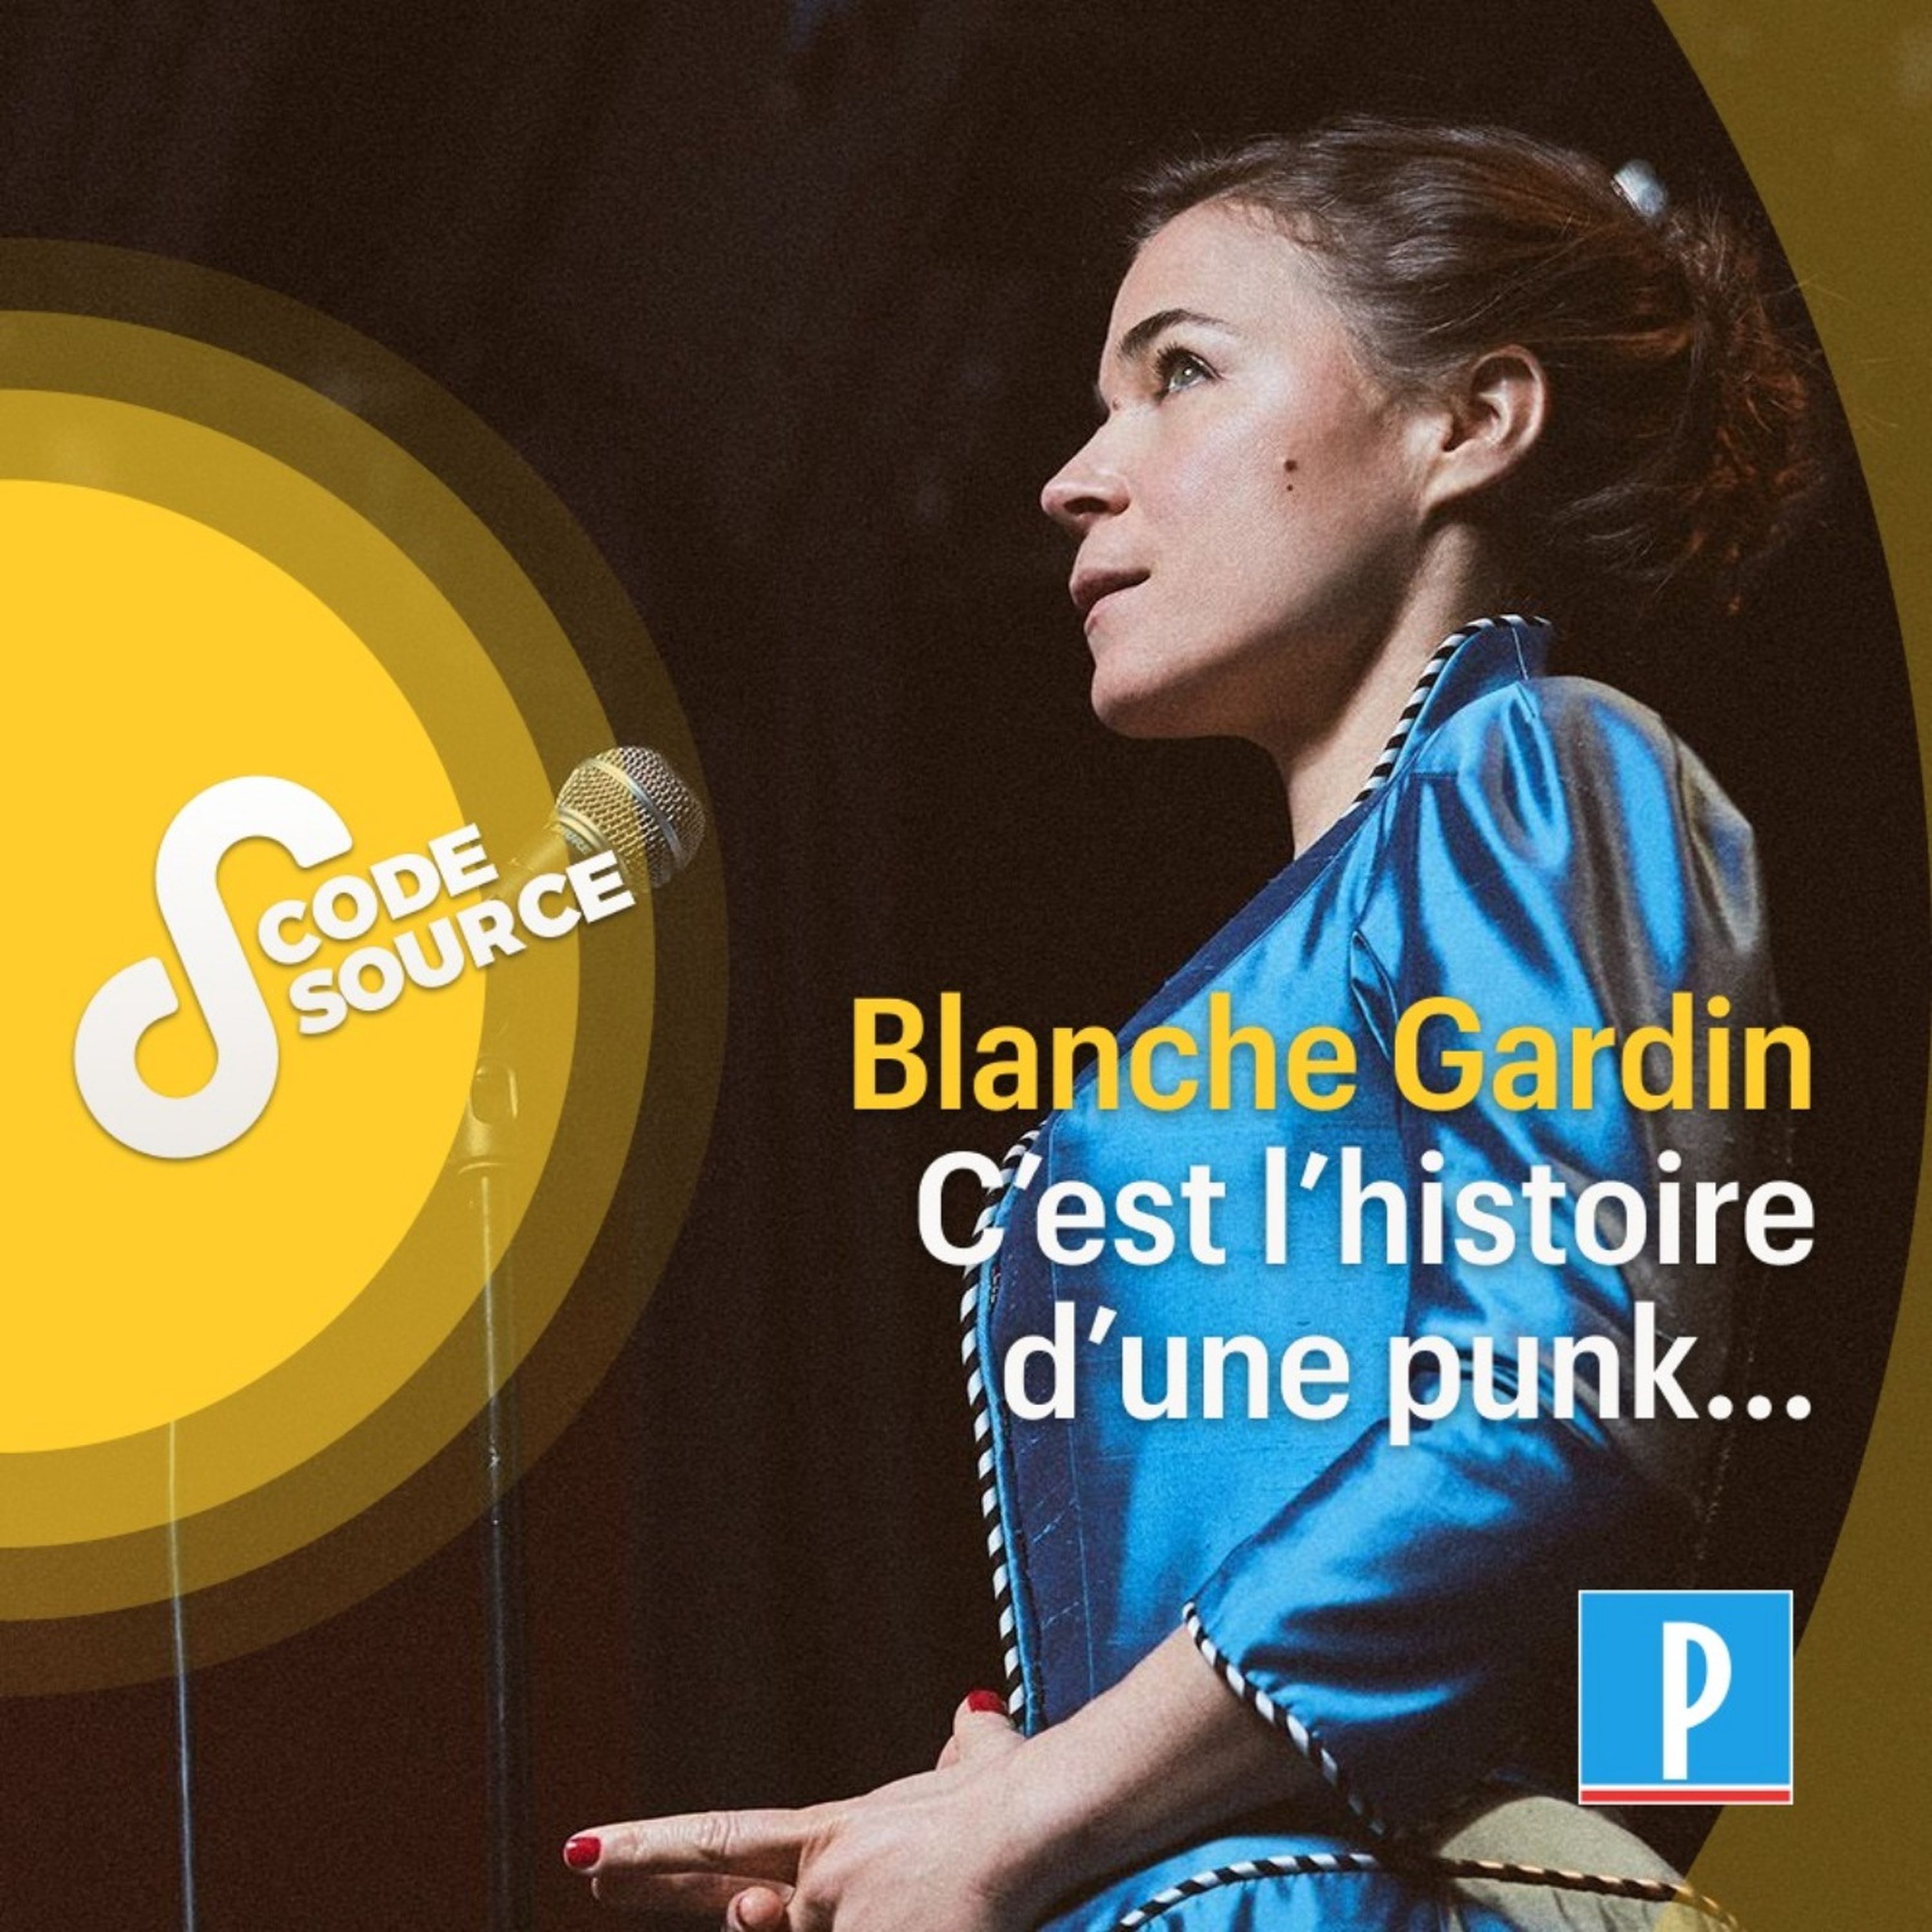 Blanche Gardin, c'est l'histoire d'une punk…